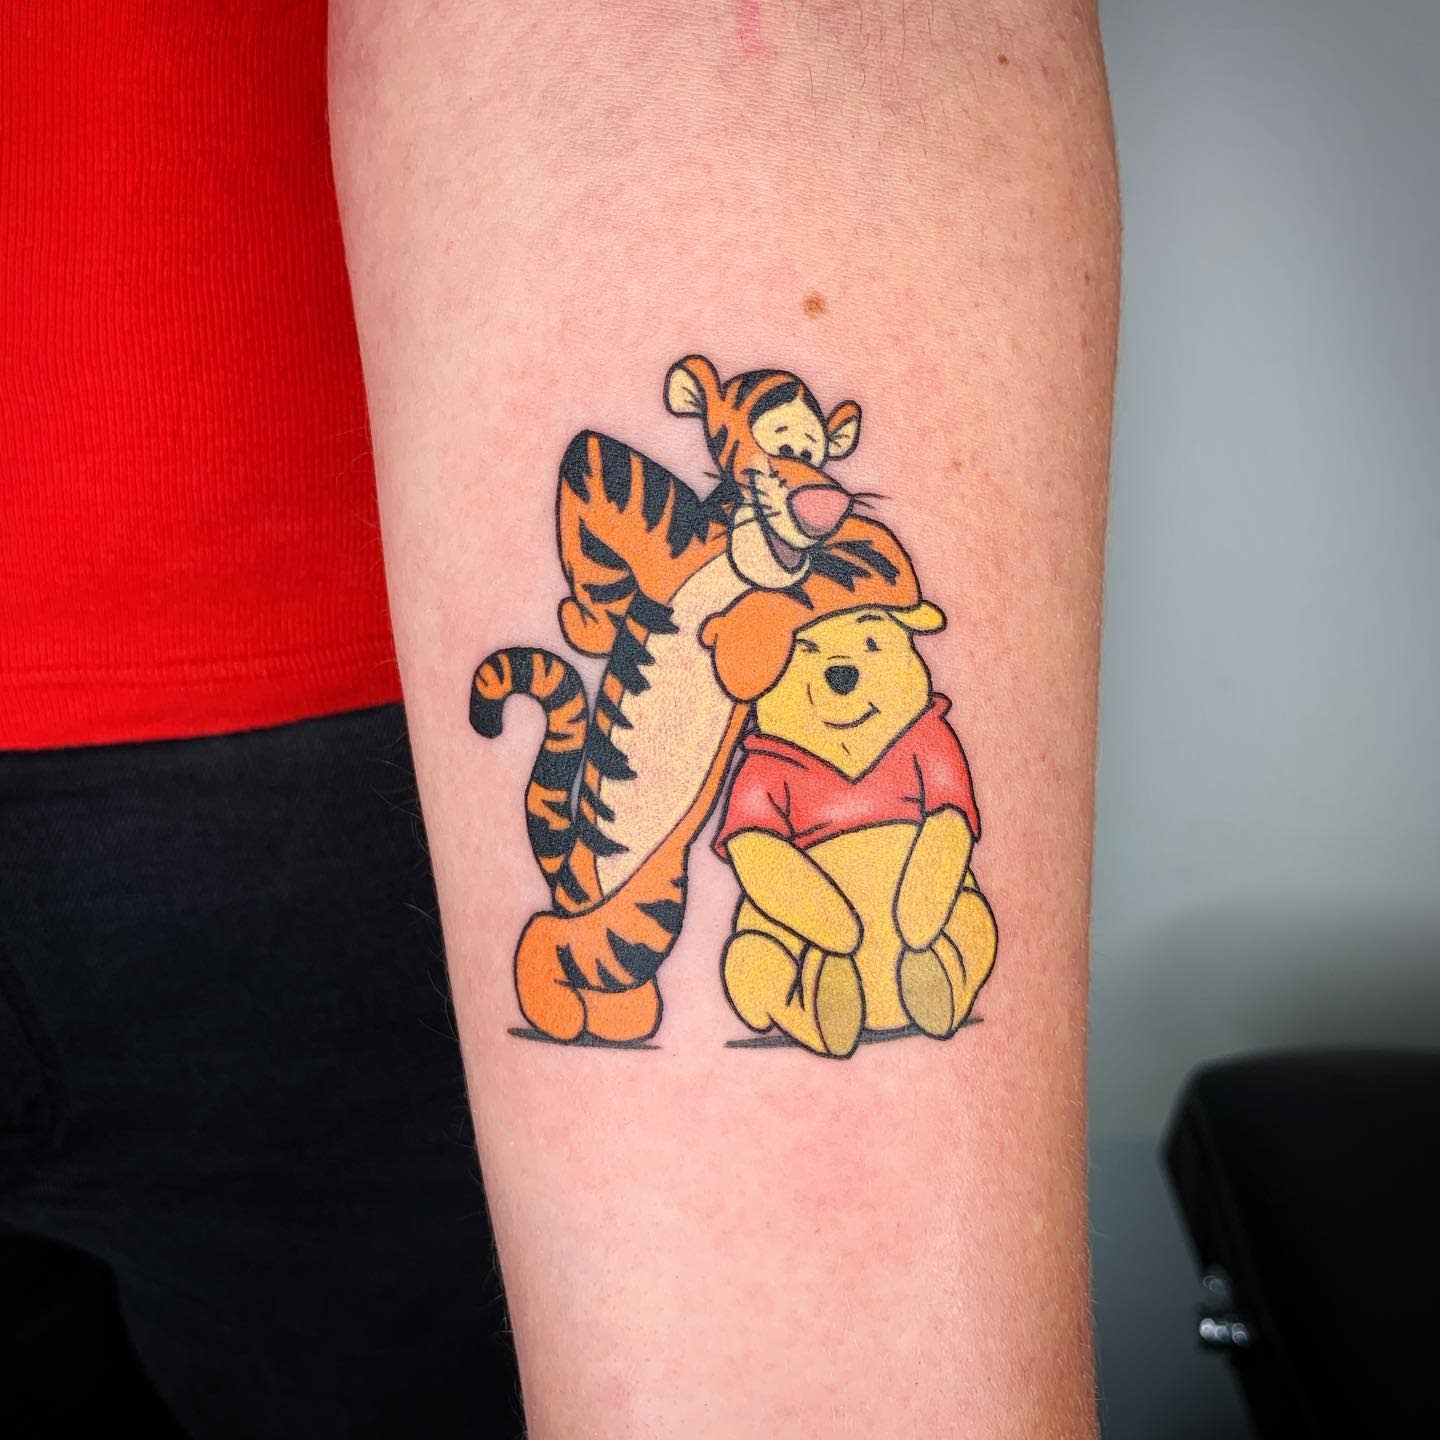 Tatuaje Tigger Winnie the Pooh -chihirotattoos